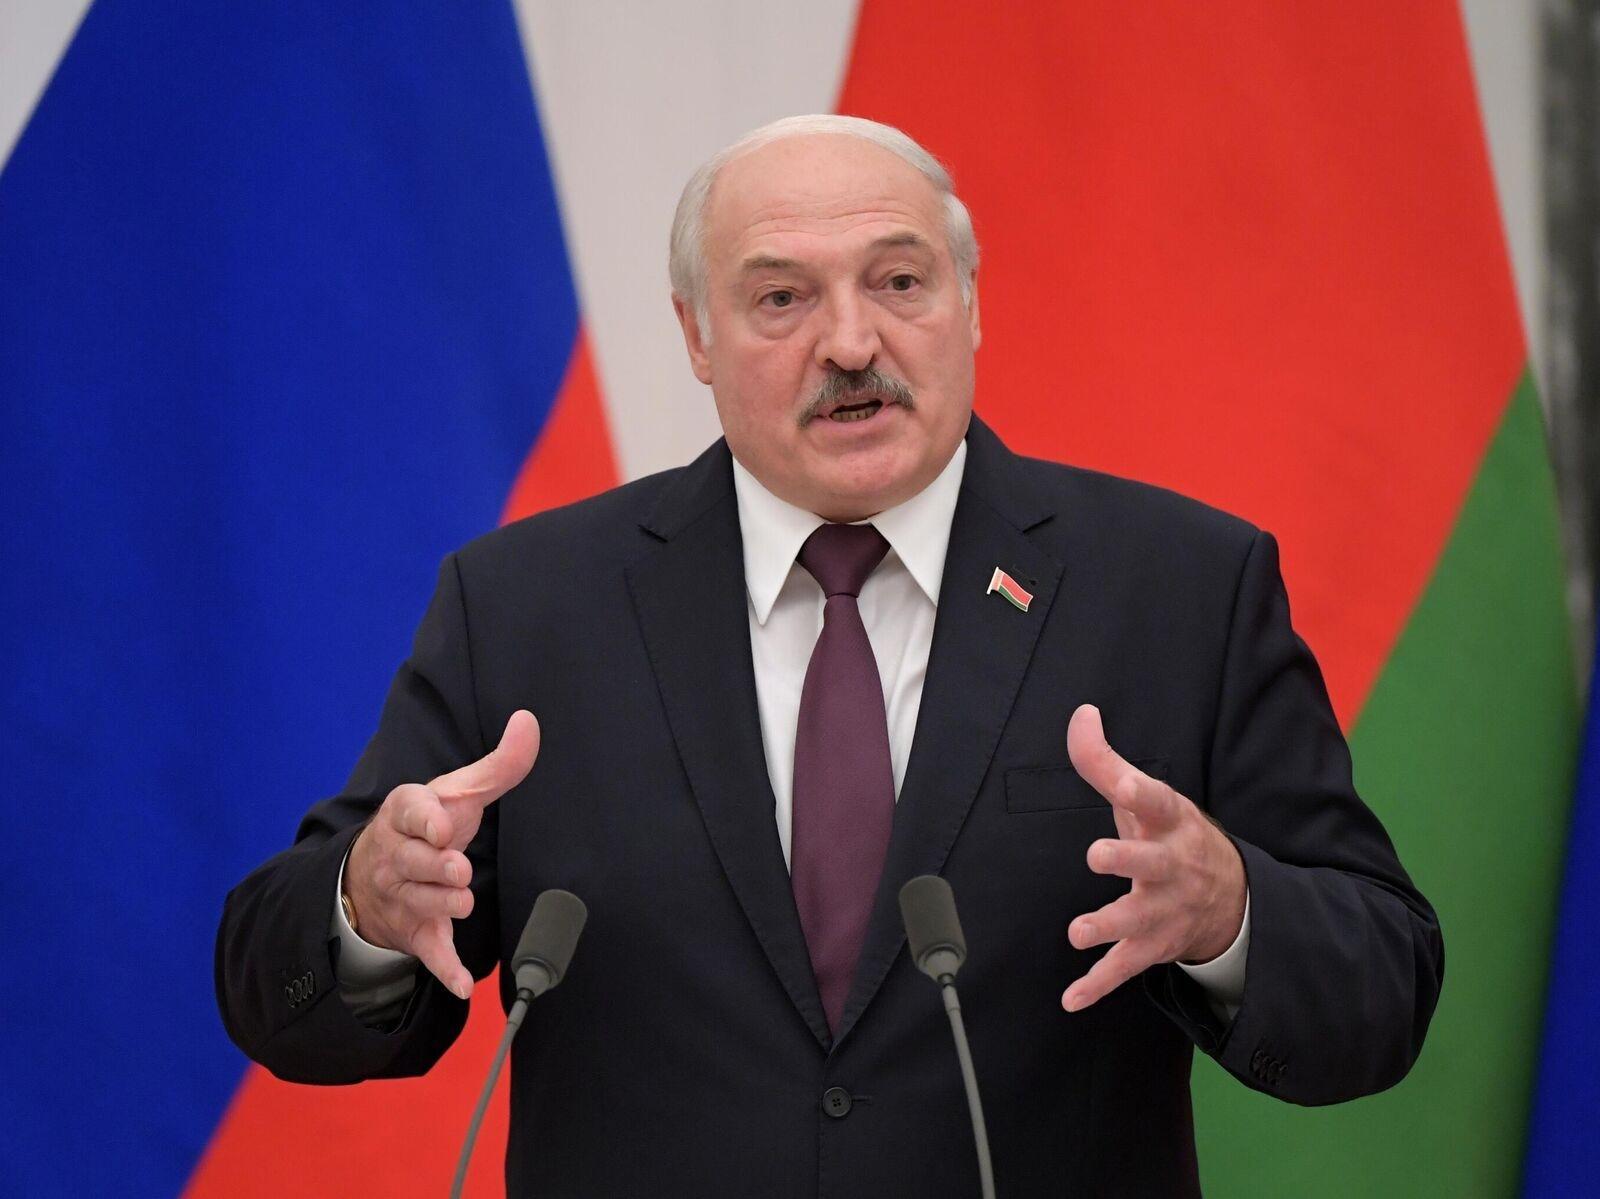 Лукашенко призвал организовать совместный саммит ЕАЭС, ШОС и БРИКС